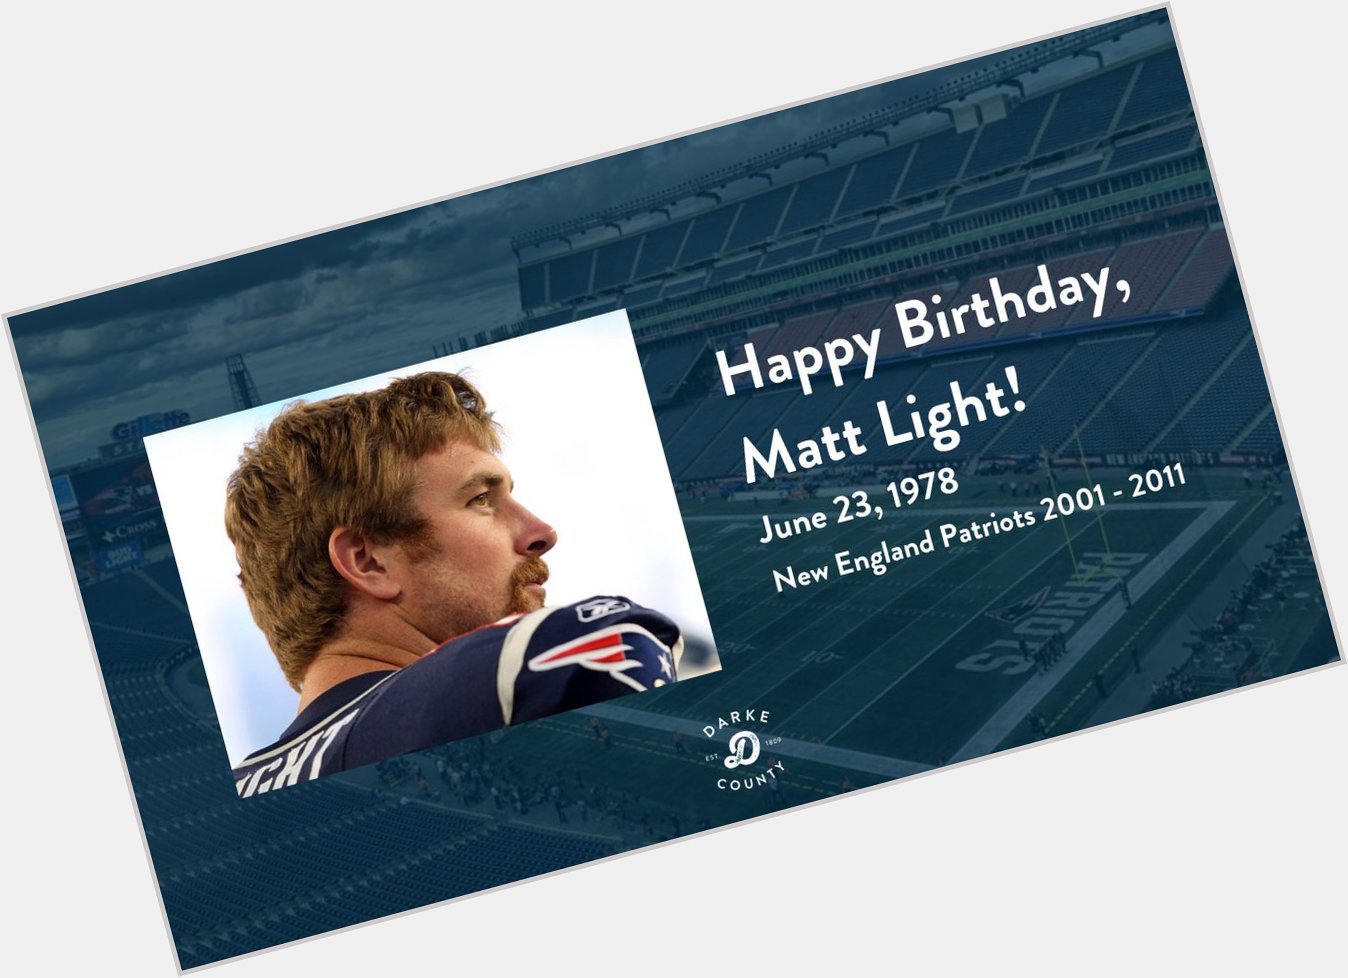 Happy birthday, Matt Light!    